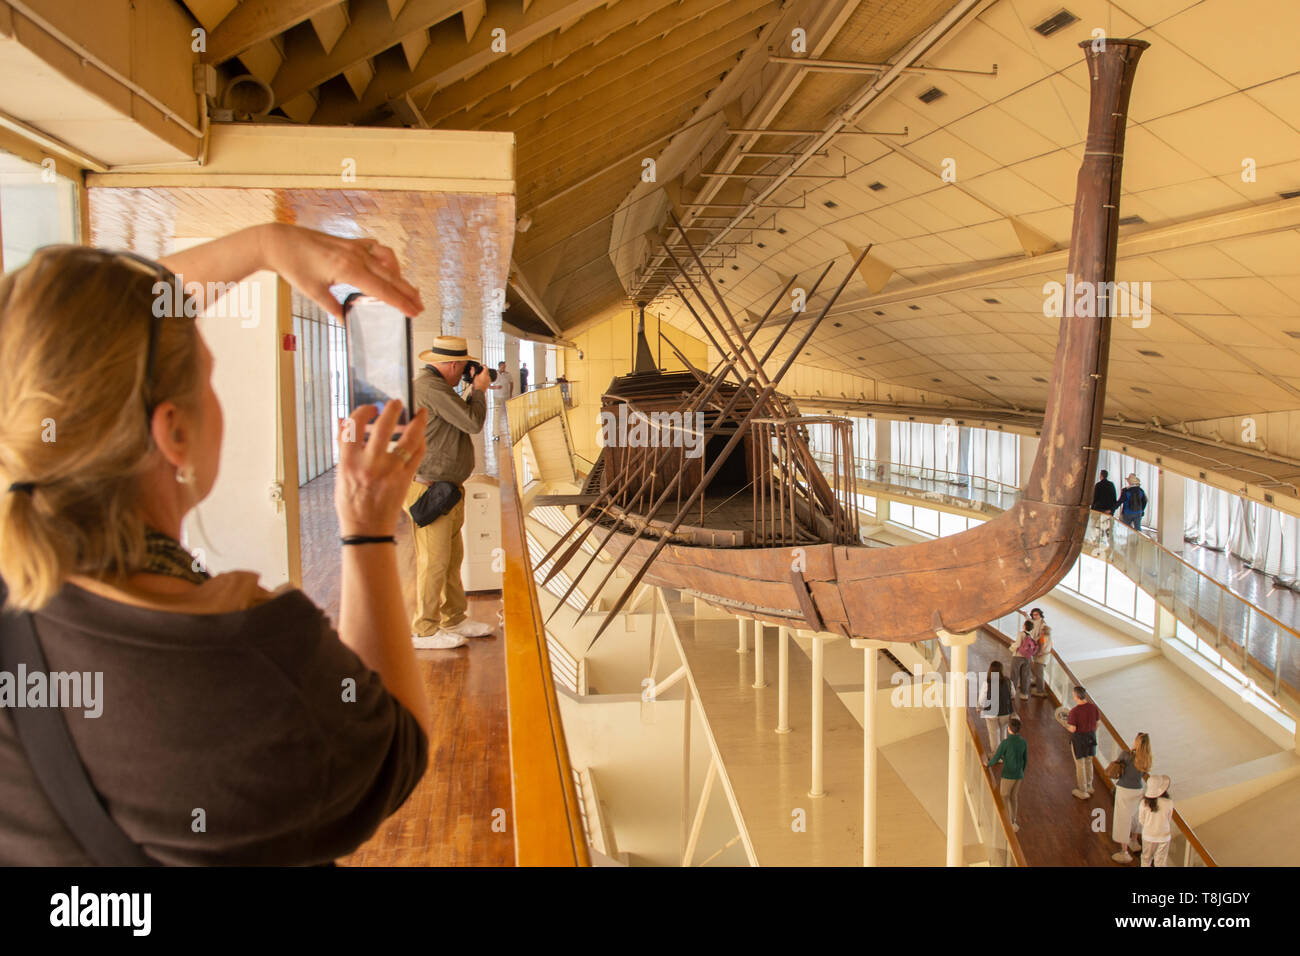 Questo originale, intatti full-sized barca è stata edificata quasi certamente per gli antichi egiziani Faraone Khufu più di 4 mila anni fa. Nel 1954 la nave w Foto Stock